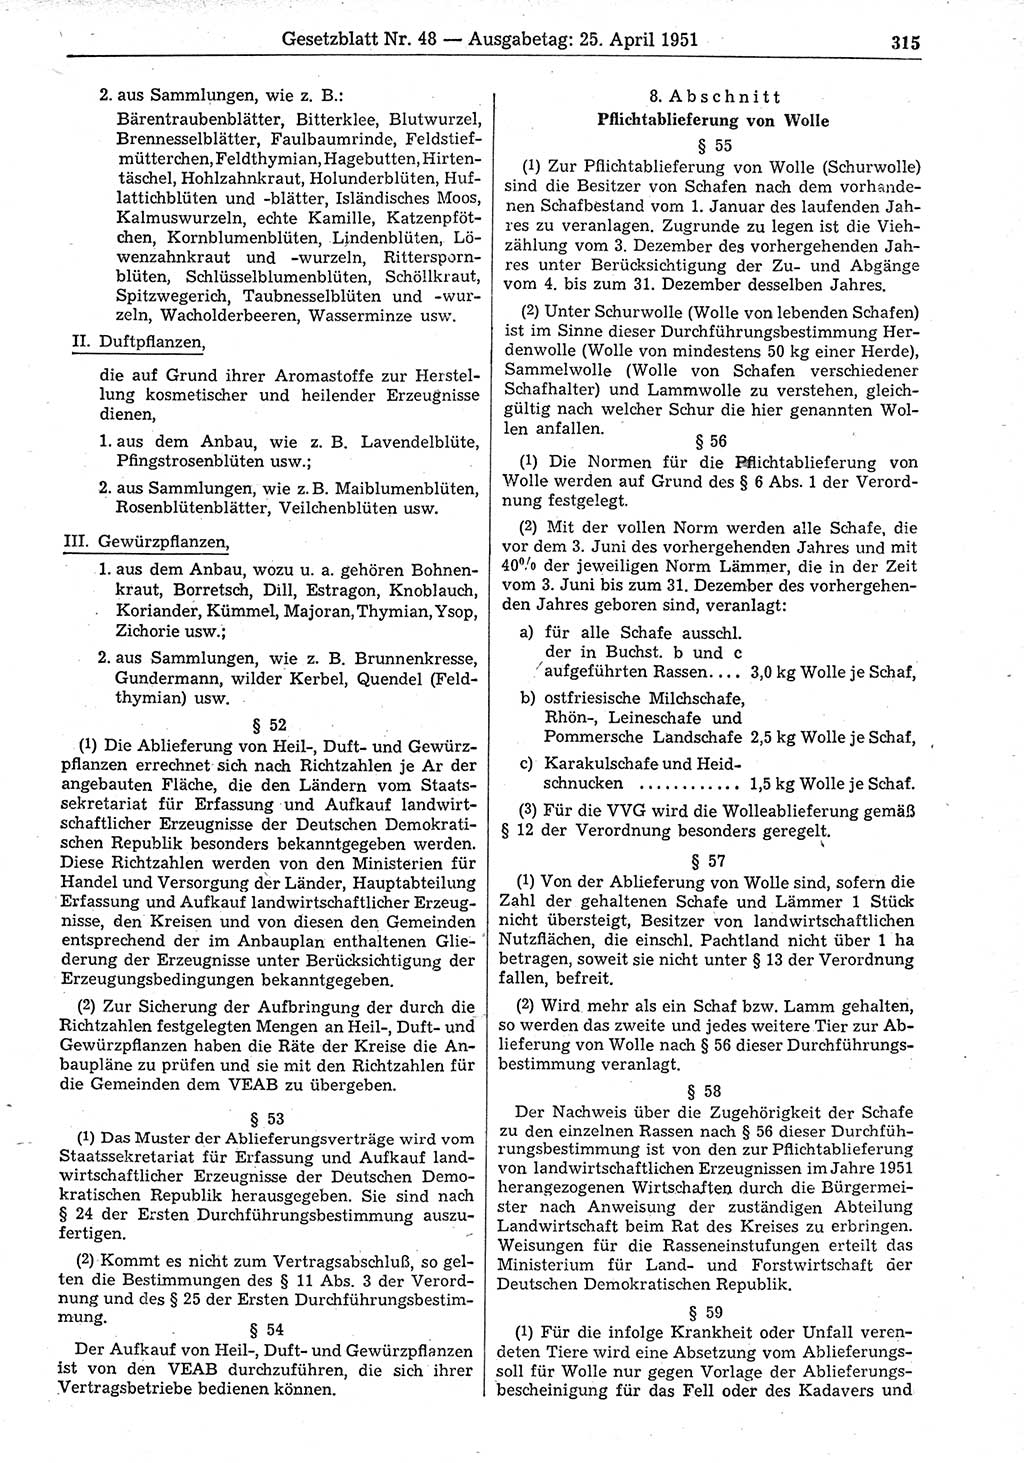 Gesetzblatt (GBl.) der Deutschen Demokratischen Republik (DDR) 1951, Seite 315 (GBl. DDR 1951, S. 315)